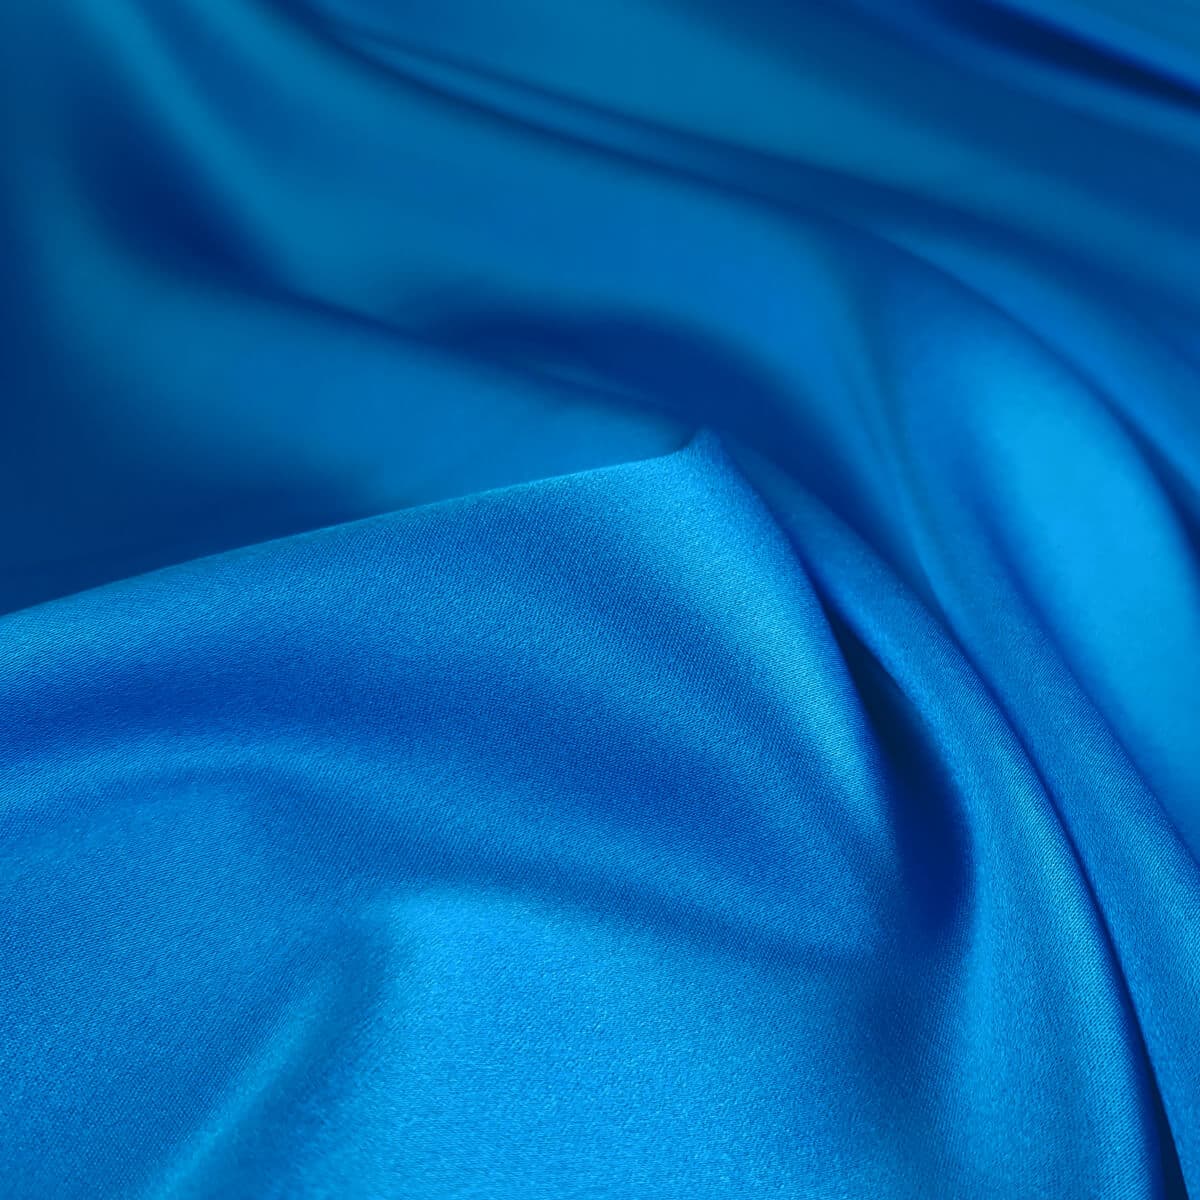 niebieska satyna jedwabna z elastanem kryjaca gladkaA